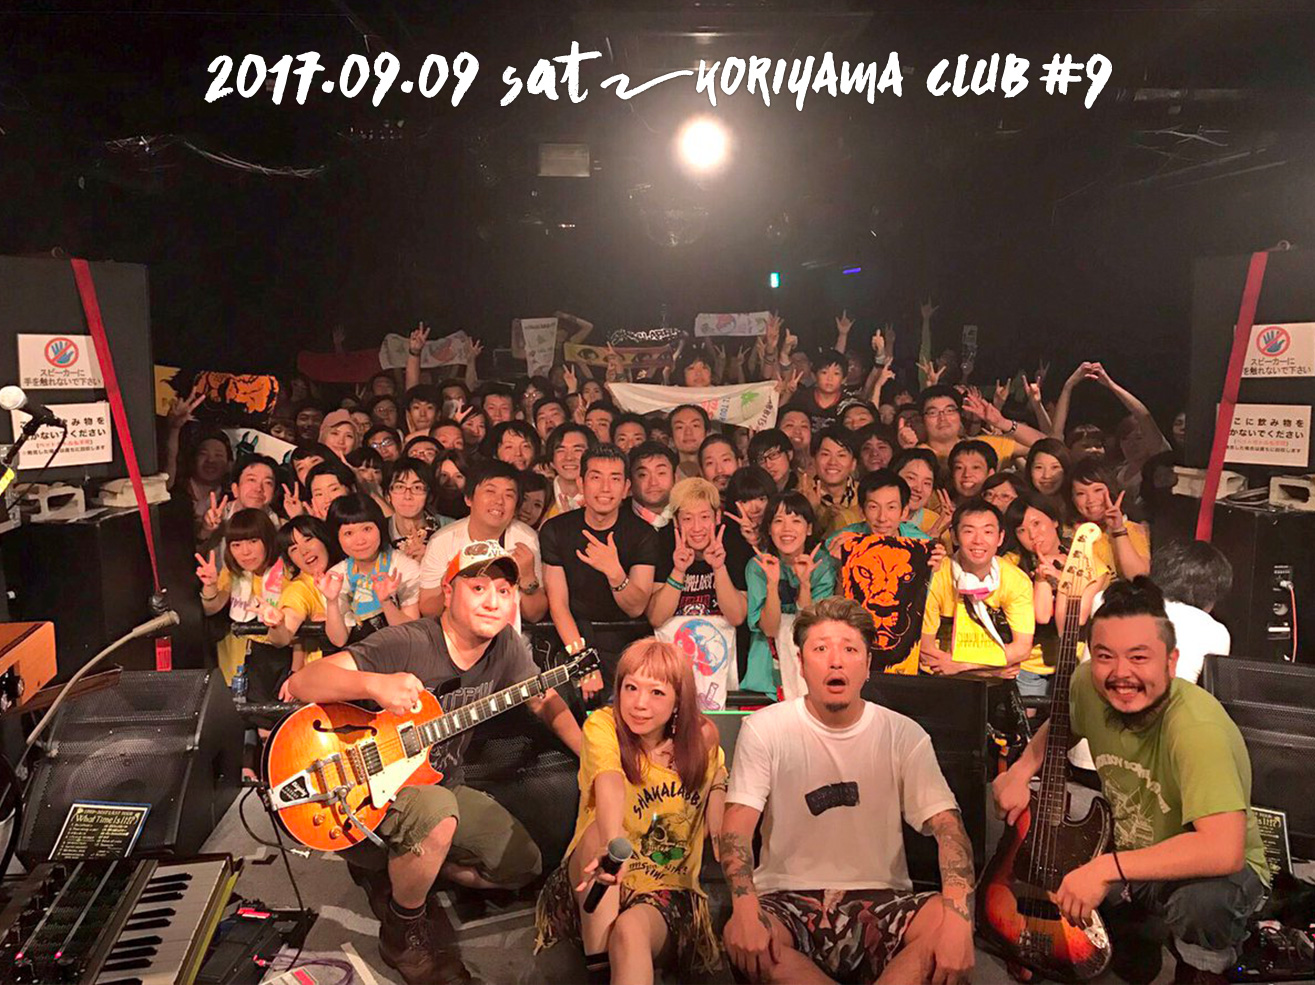 郡山 CLUB #9